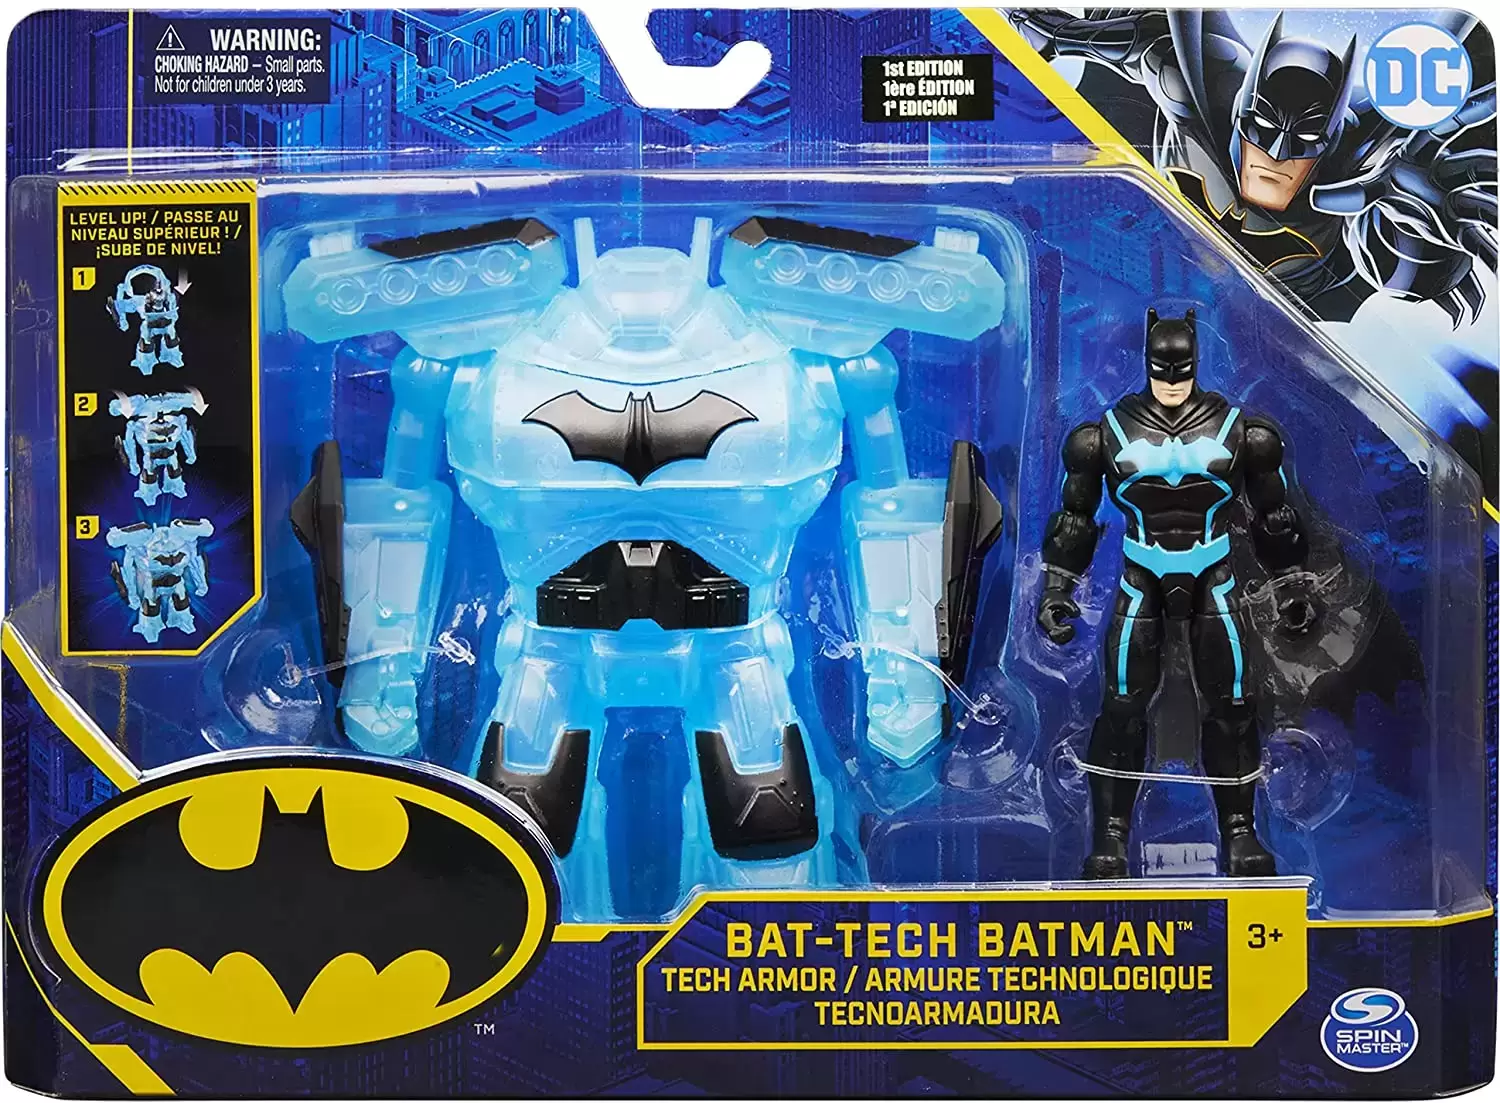 Batman bat-tech 1st edition toy figure